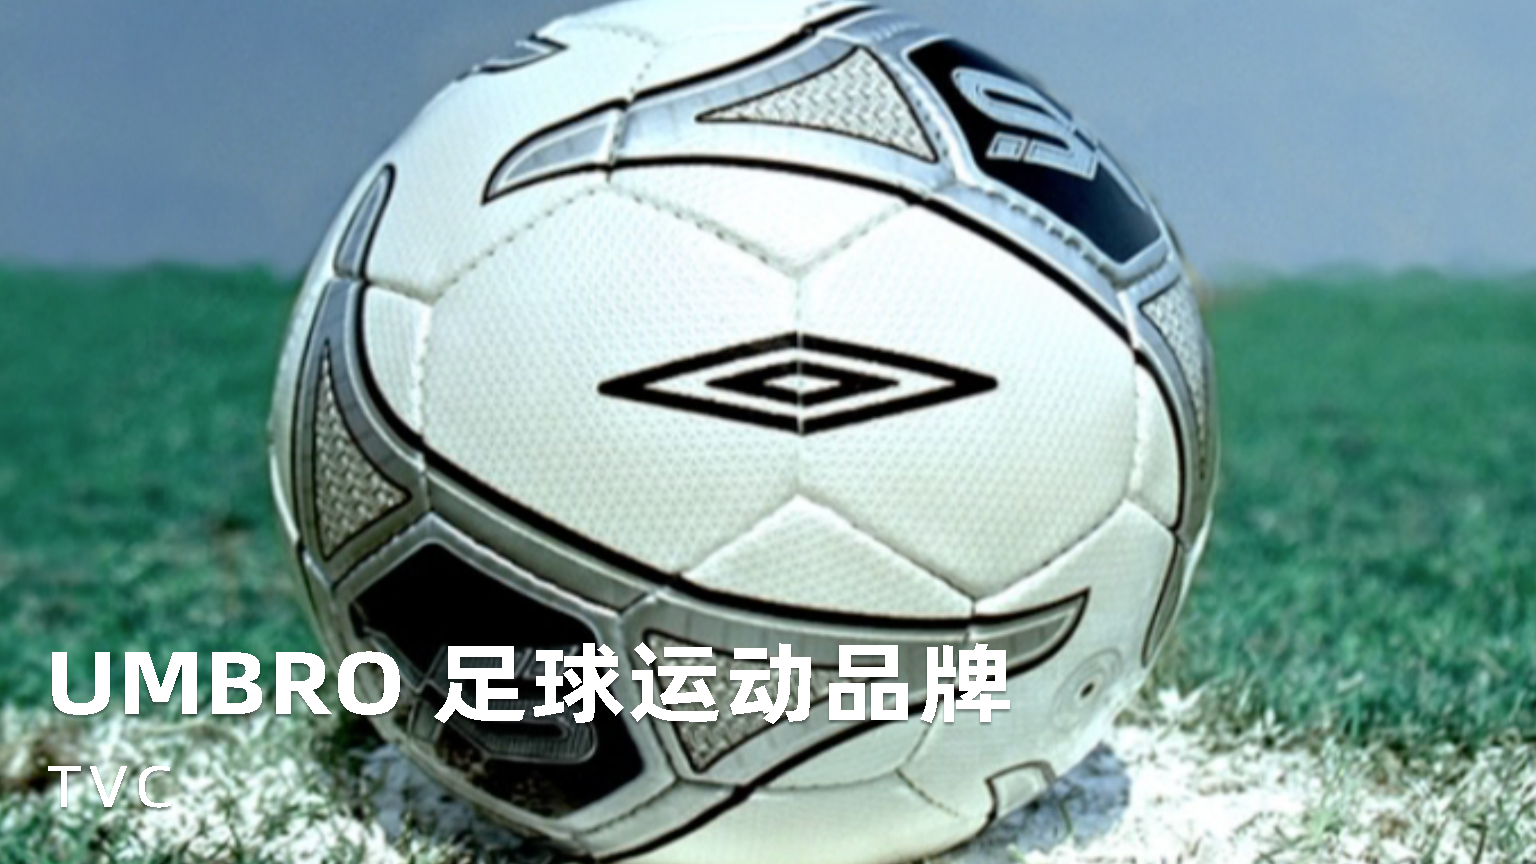 《UMBRO 足球运动品牌》宣传片